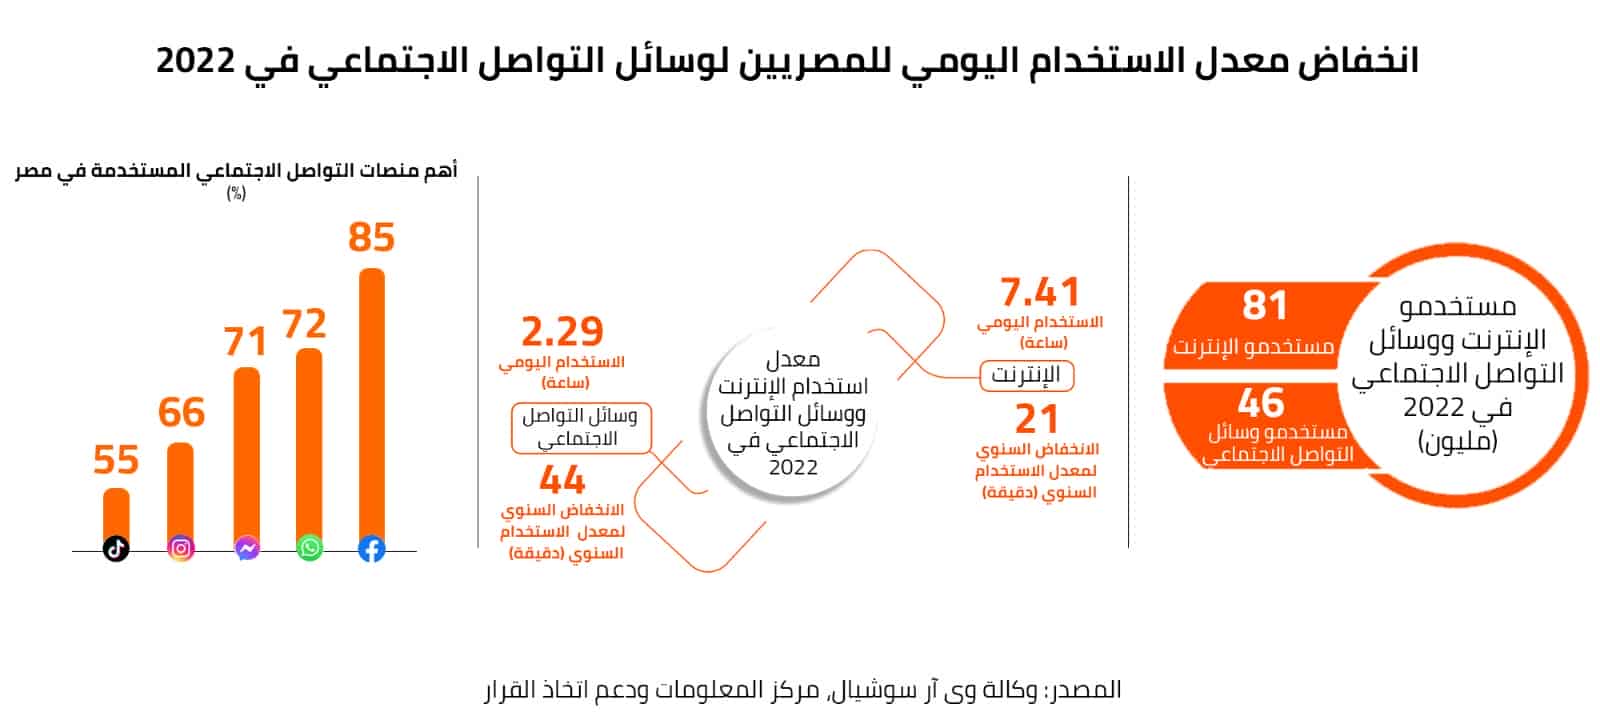 انخفاض معدل الاستخدام اليومي للمصريين لوسائل التواصل الاجتماعي في 2022 